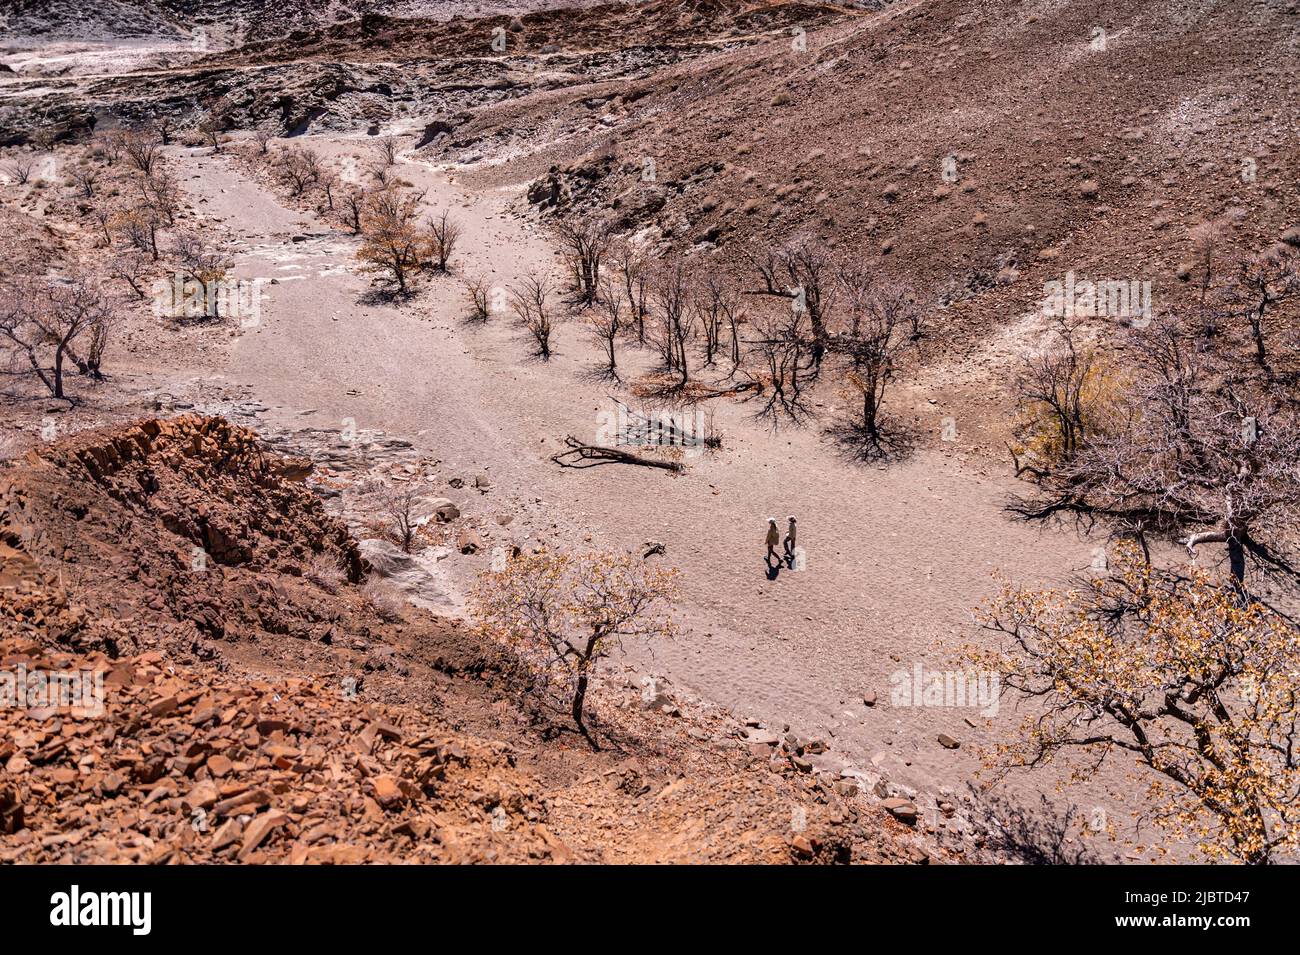 Namibia, Kunene Region, Damaraland, Khorixas, Orgelpfeifen, Basaltorgeln die von der UNESCO zum Weltkulturerbe erklärten Orgeln entstanden vor rund 150 Millionen Jahren nach dem Eindringen von Lavaflüssigkeit in eine Schiefergesteinsformation, die im Laufe der Zeit durch Erosion freigelegt wurde Stockfoto